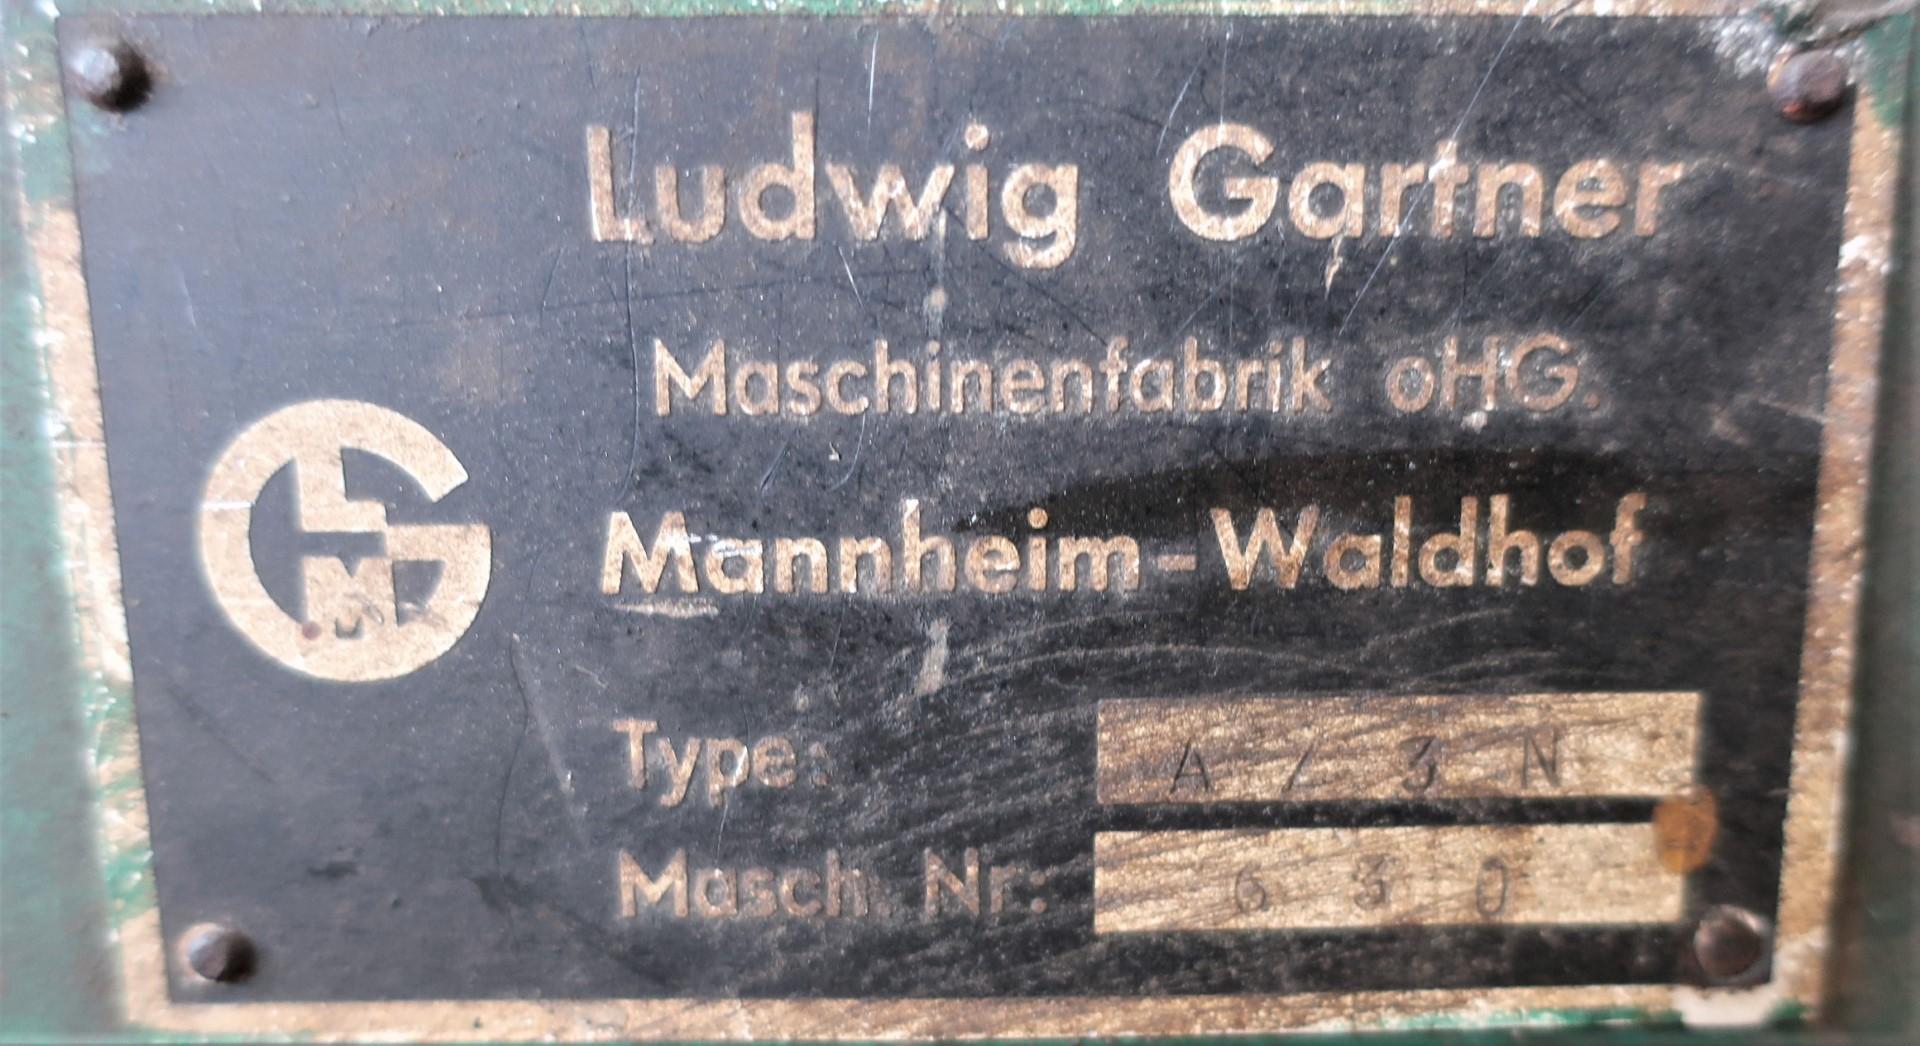 Grinding/Ludwig Gartner - A 73 N